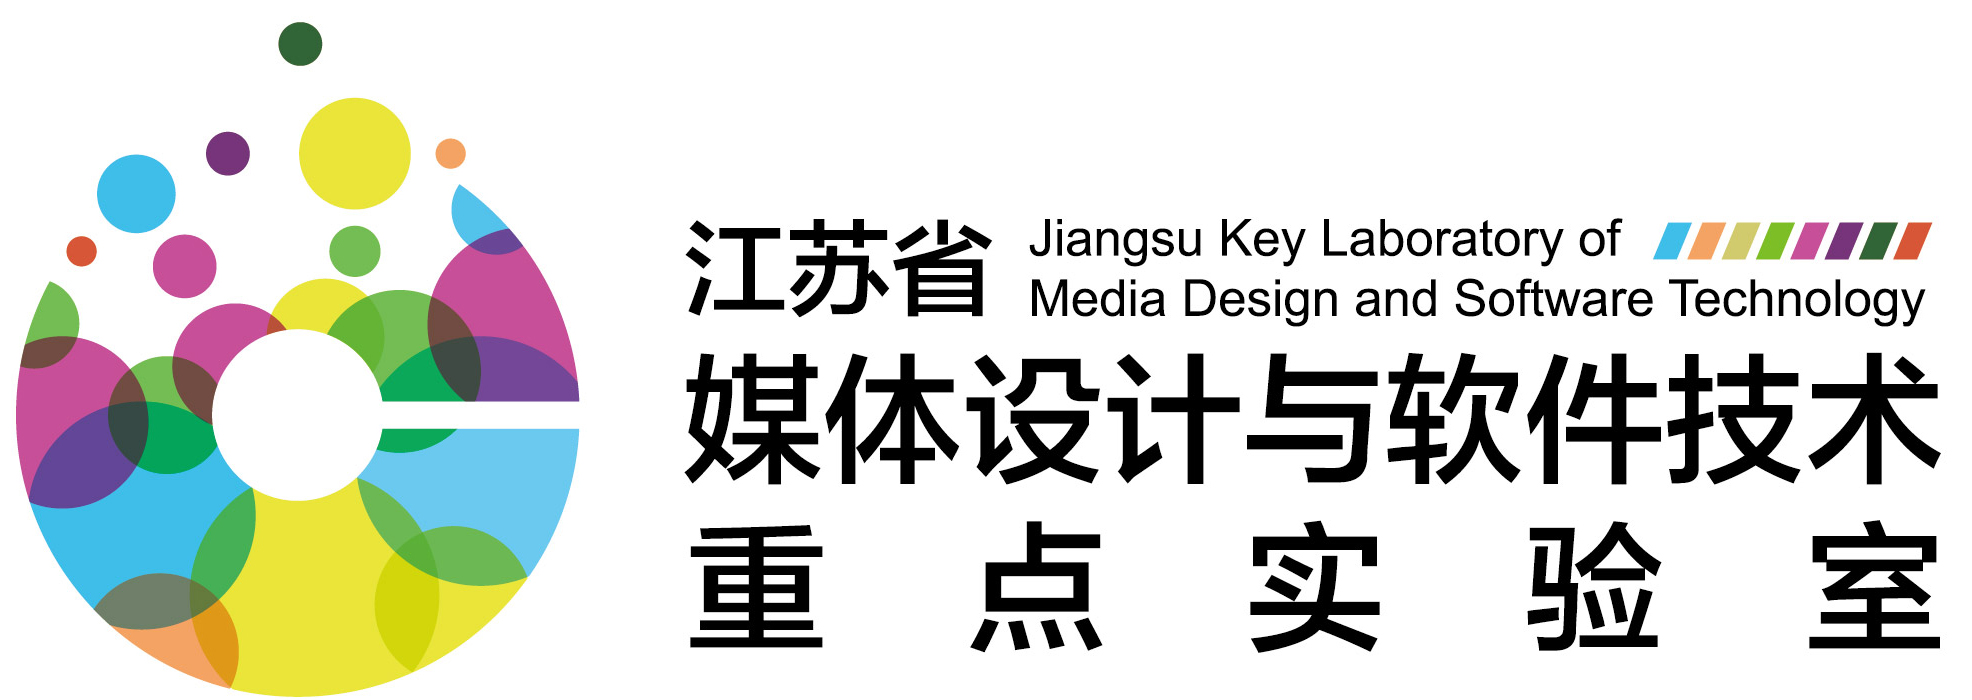 江苏省媒体设计与软件技术重点实验室